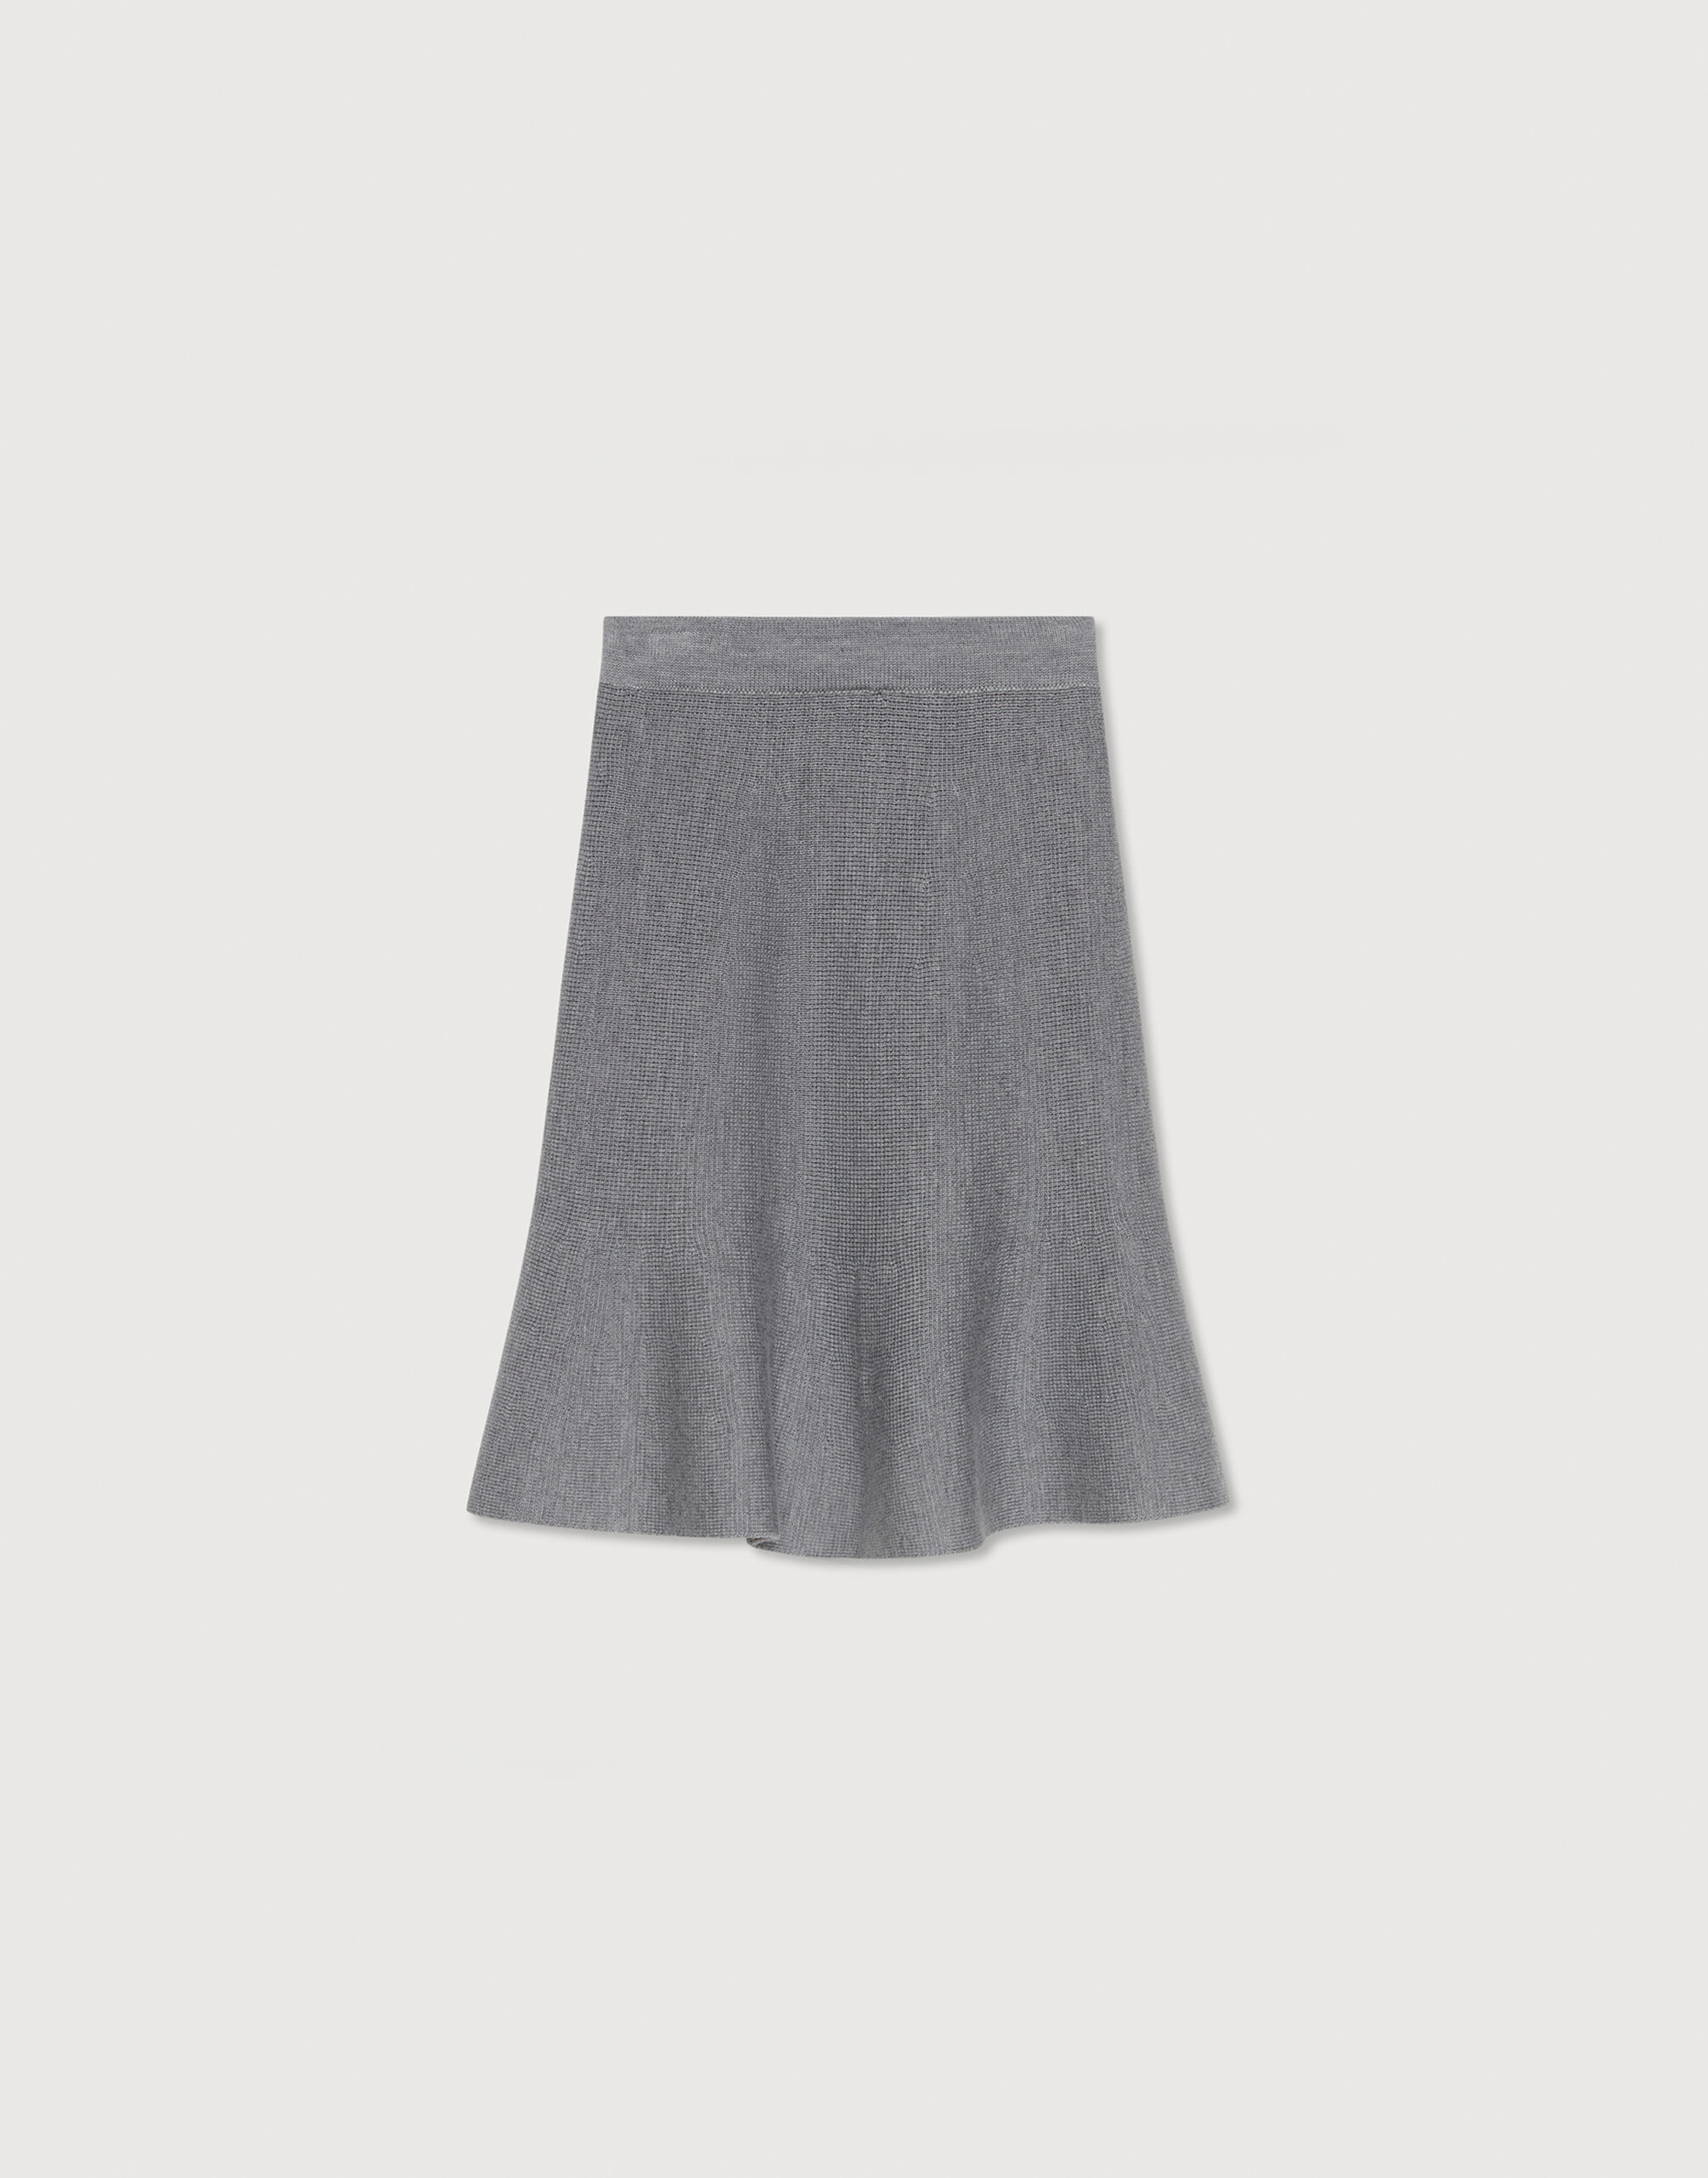 72cm【新品未使用】ファビアナ フィリッピ ロングスカート グレー 定価64,900円